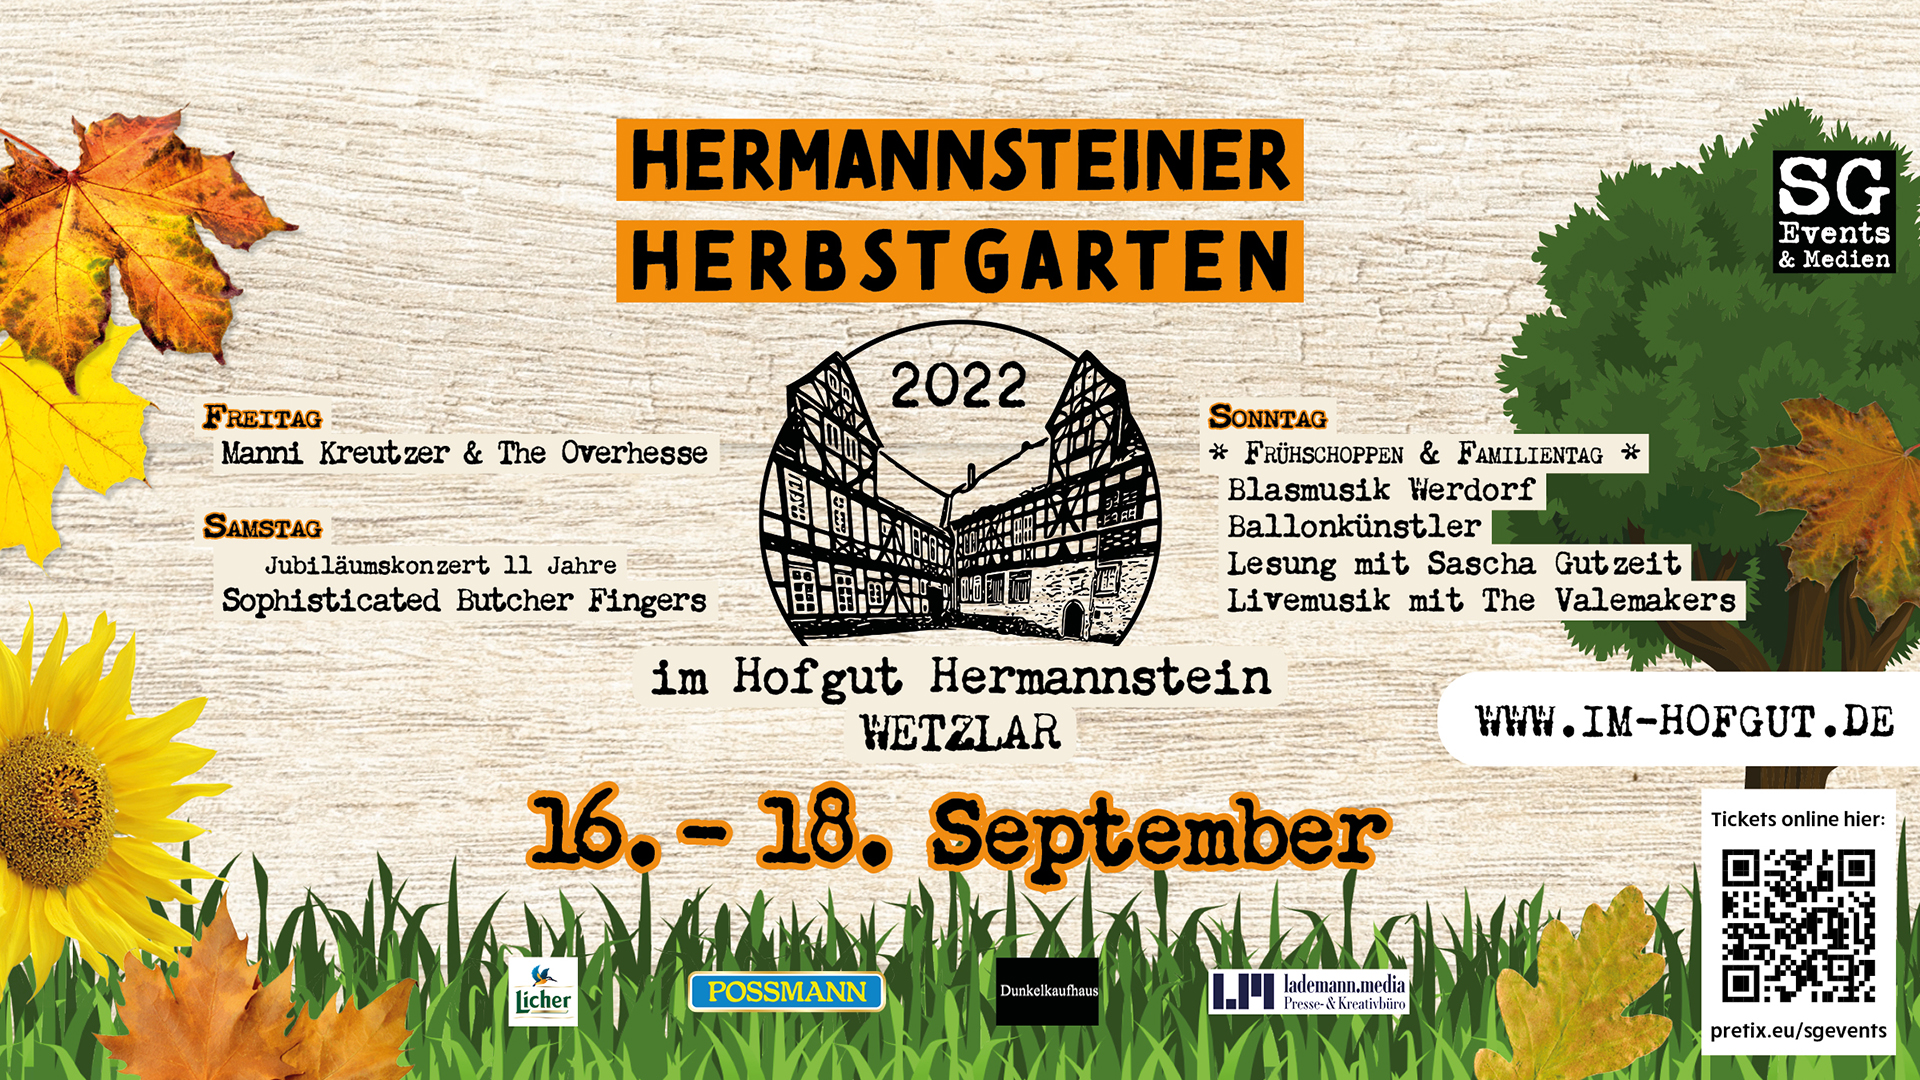 Hermannsteiner Herbstgarten 2022